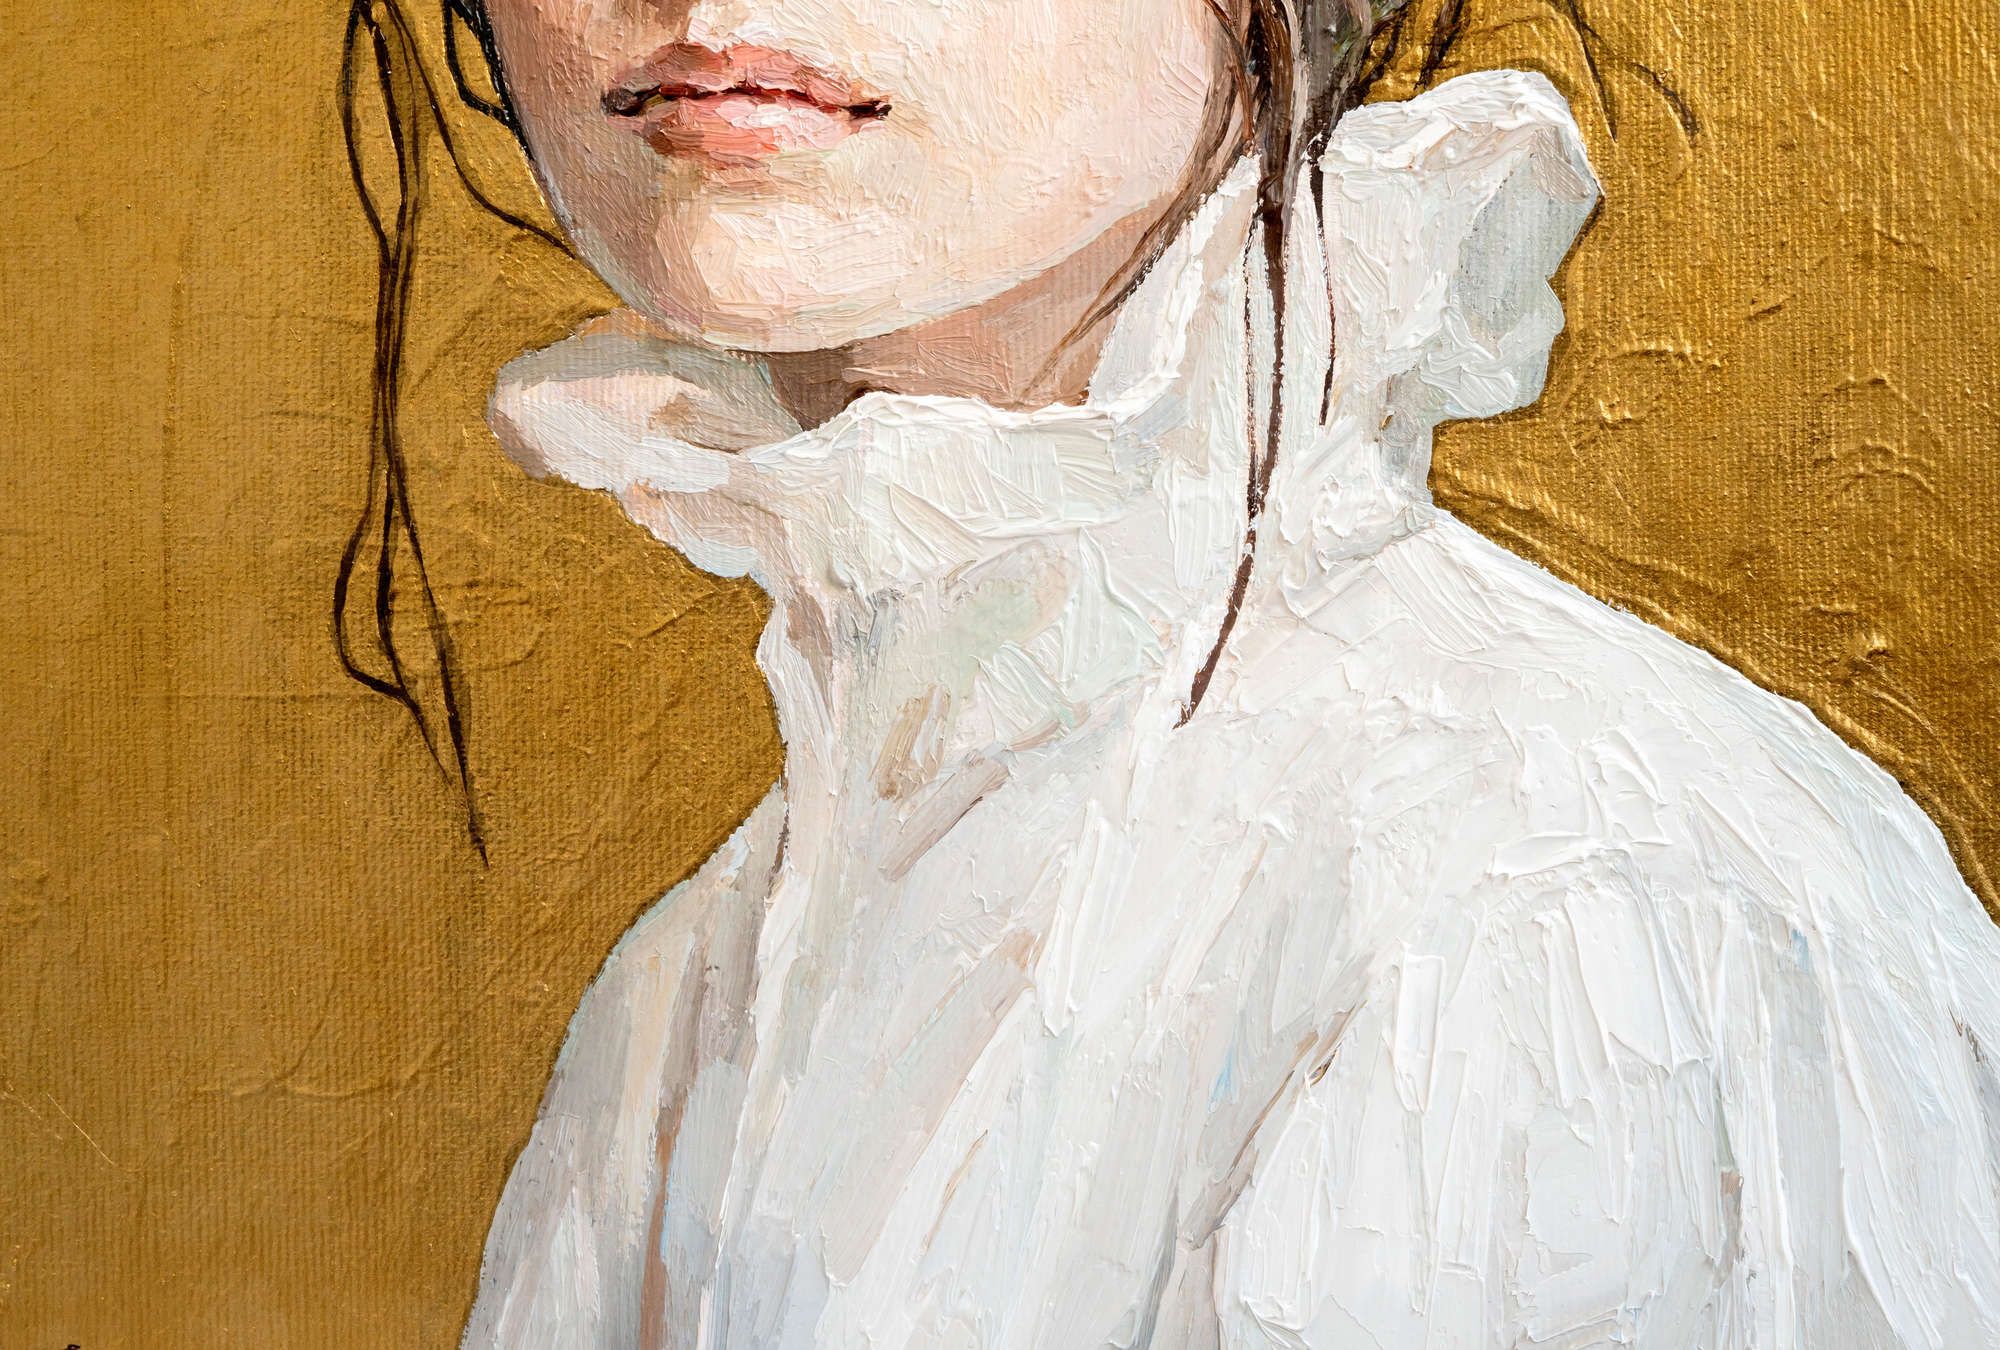             Fotomural »golda« - Retrato parcial de una mujer - Obra de arte con textura de lino | Tela no tejida de alta calidad, lisa y ligeramente brillante
        